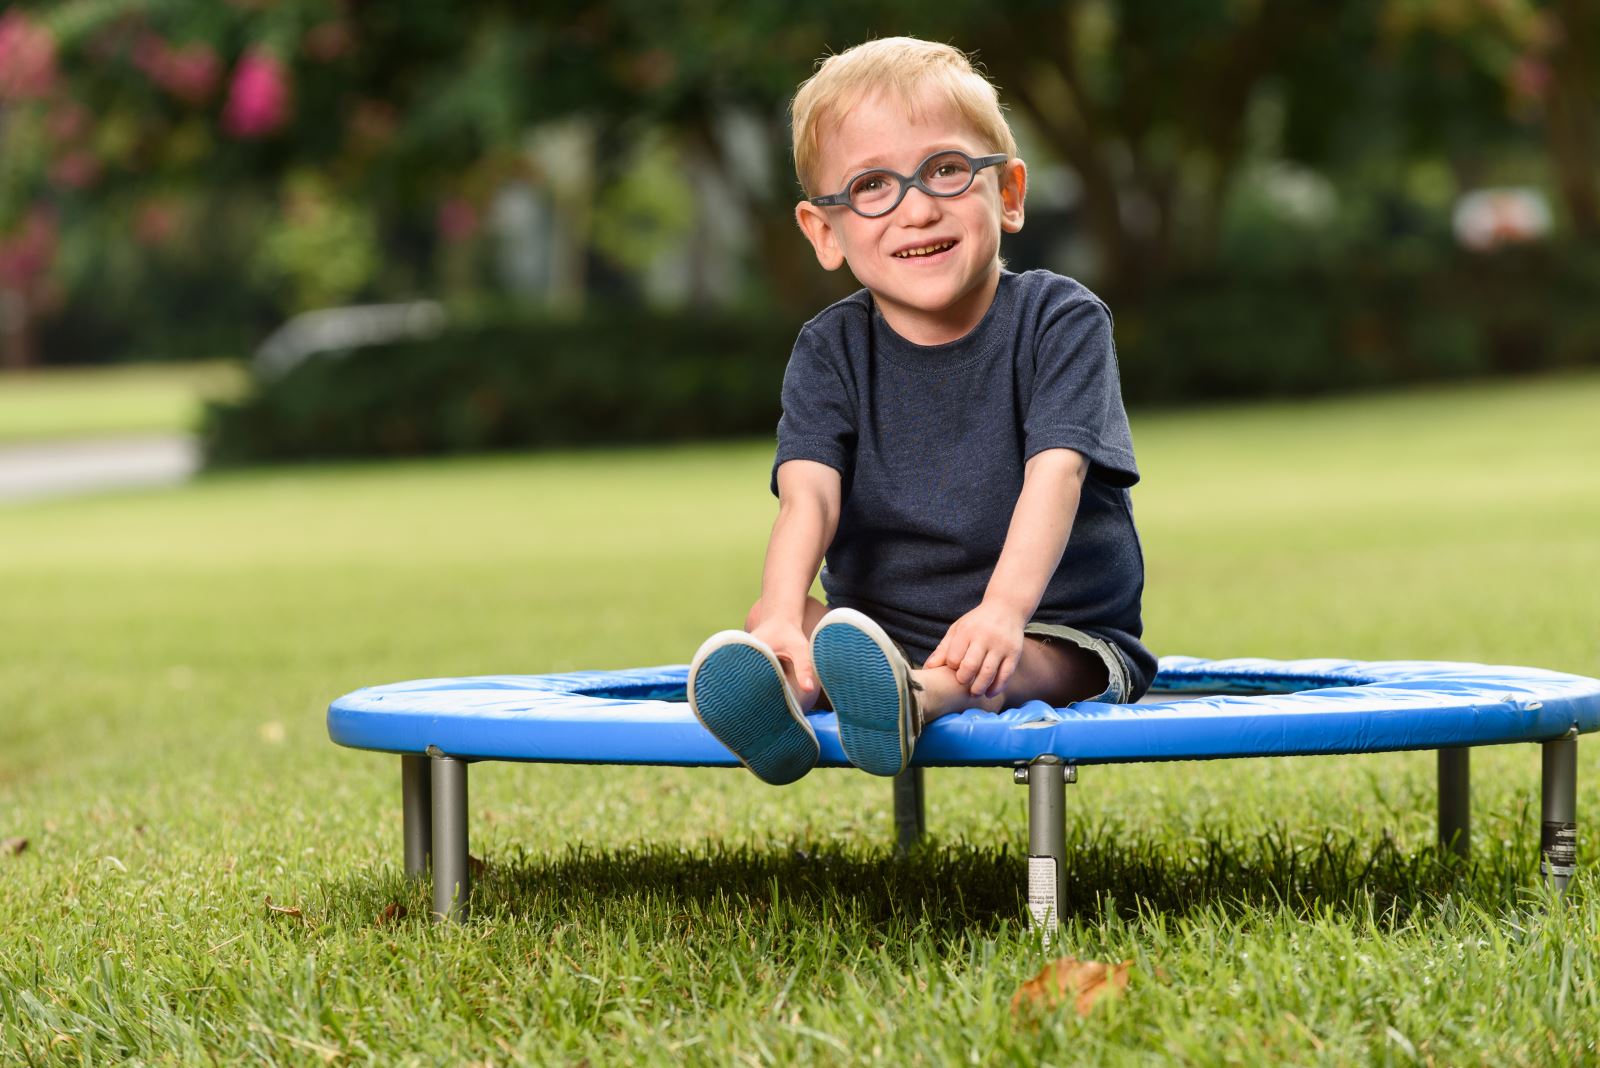 Little boy sitting on trampoline